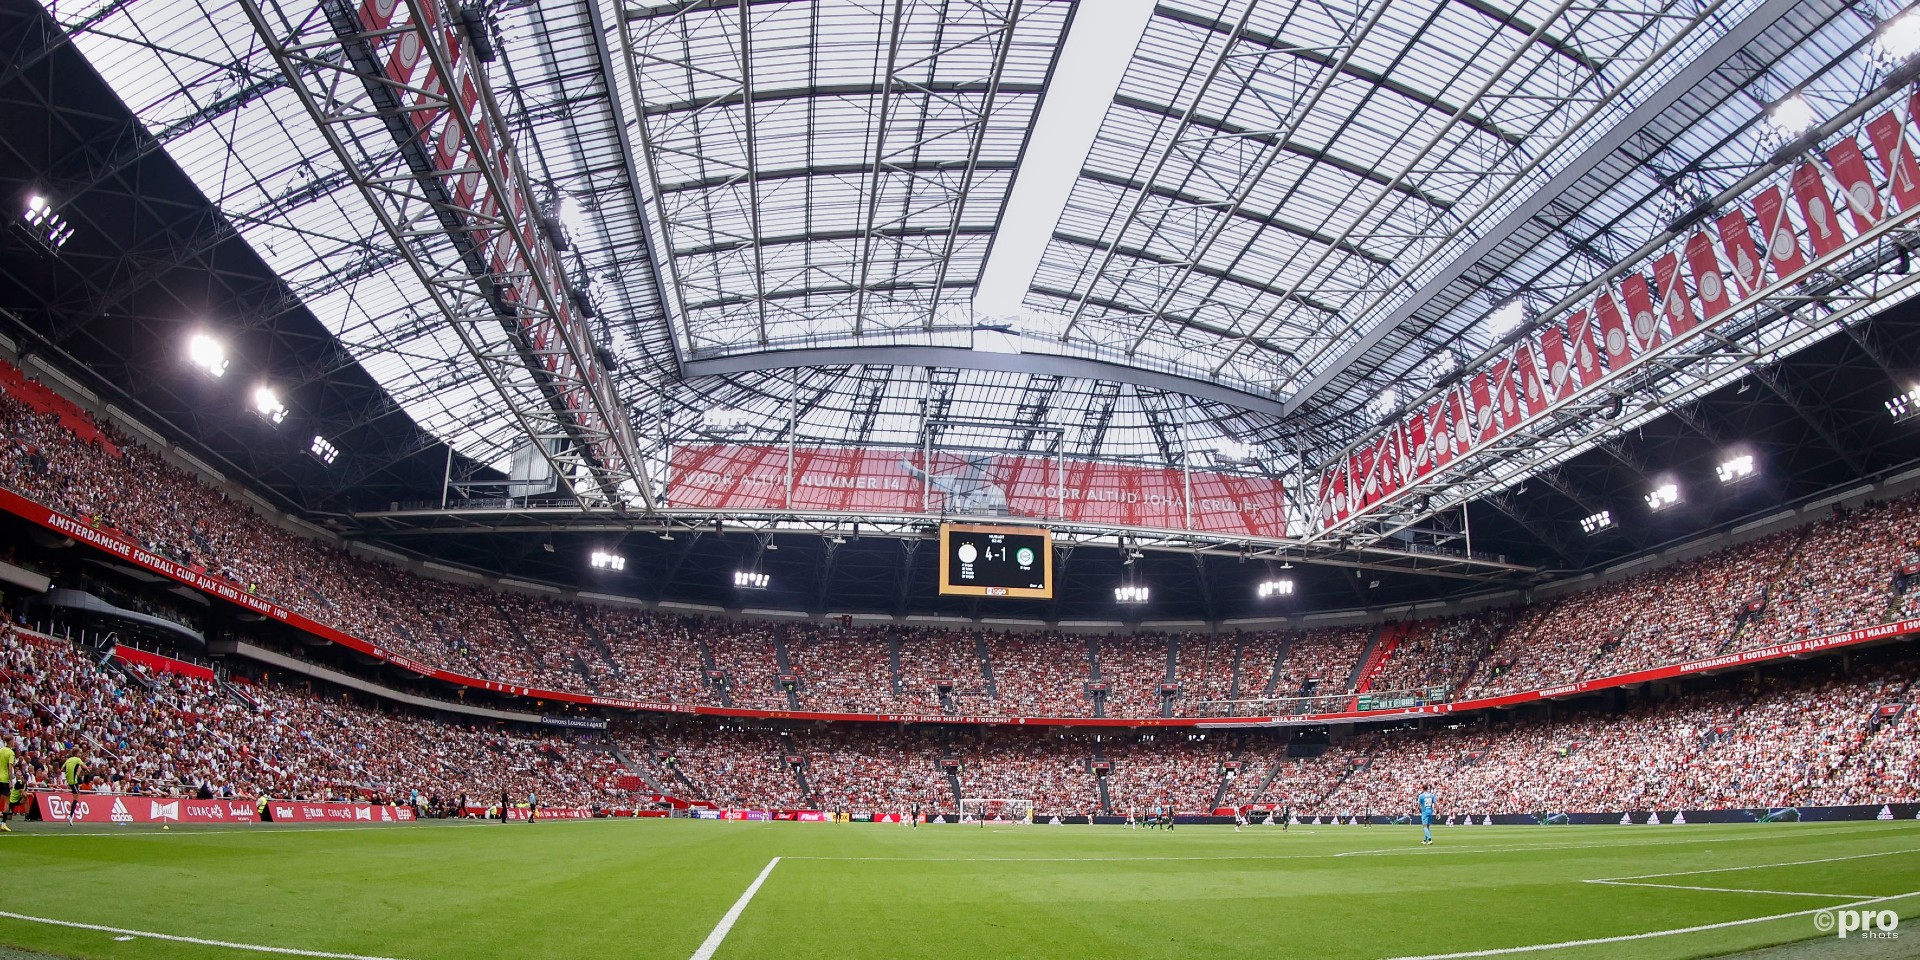 UPDATE: De Transfermarkt deel 3 - Het Amsterdamsche Voetbal